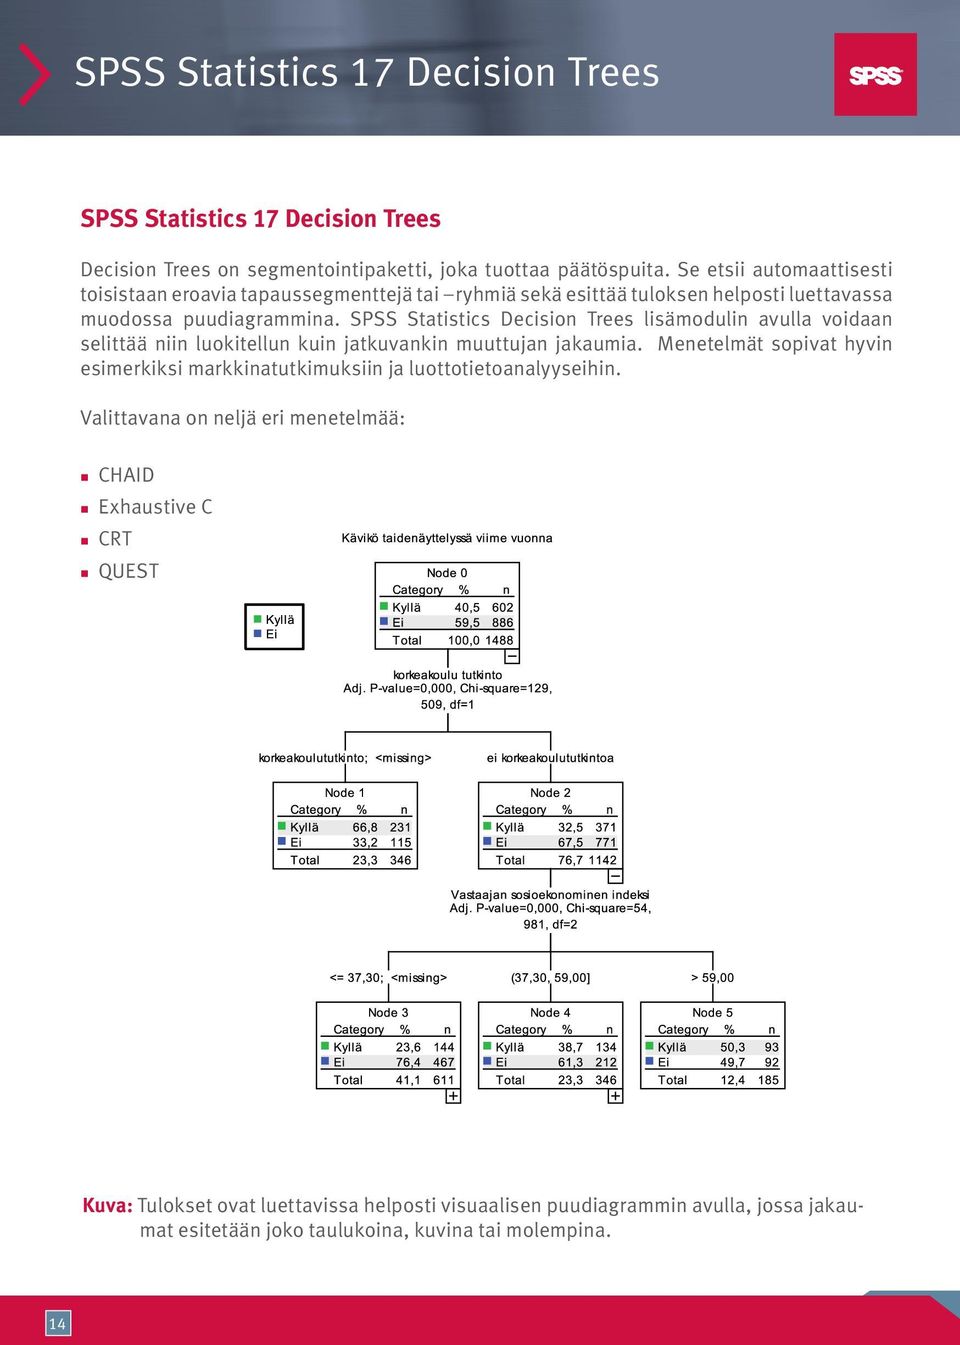 SPSS Statistics Decision Trees lisämodulin avulla voidaan selittää niin luokitellun kuin jatkuvankin muuttujan jakaumia.